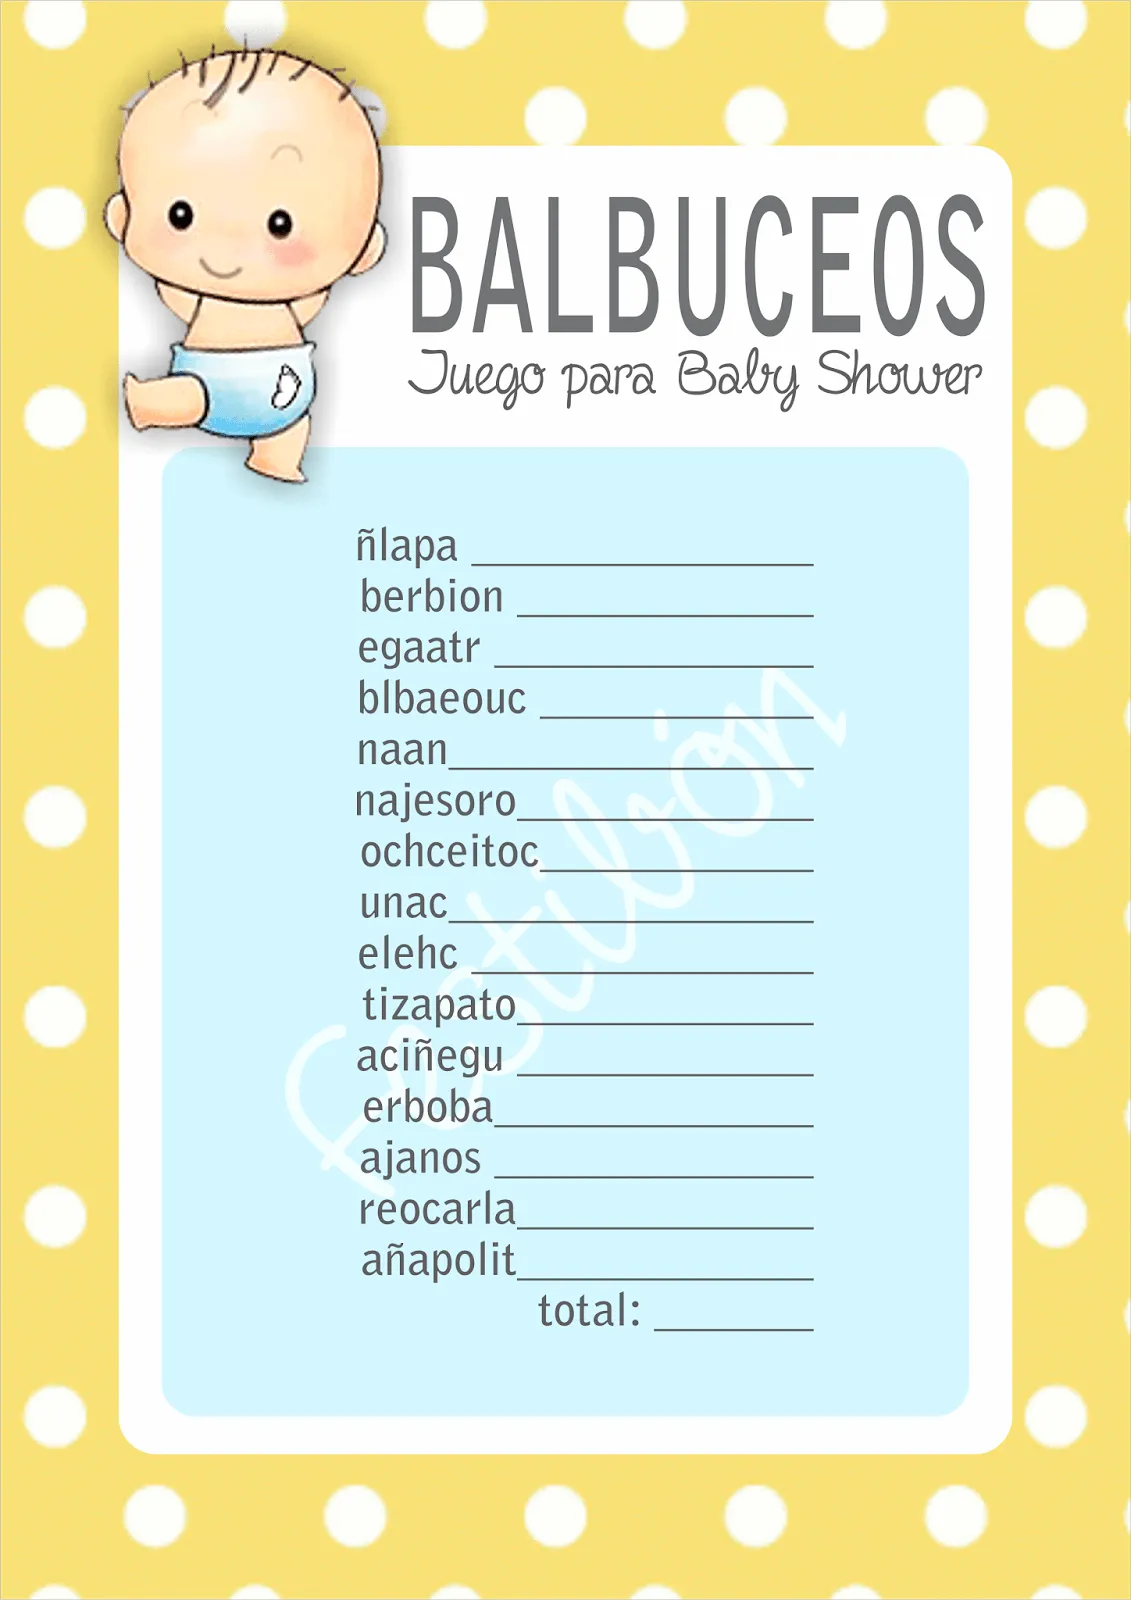 Balbuceos │ Juegos para baby shower para imprimir | JUEGOS DE ...